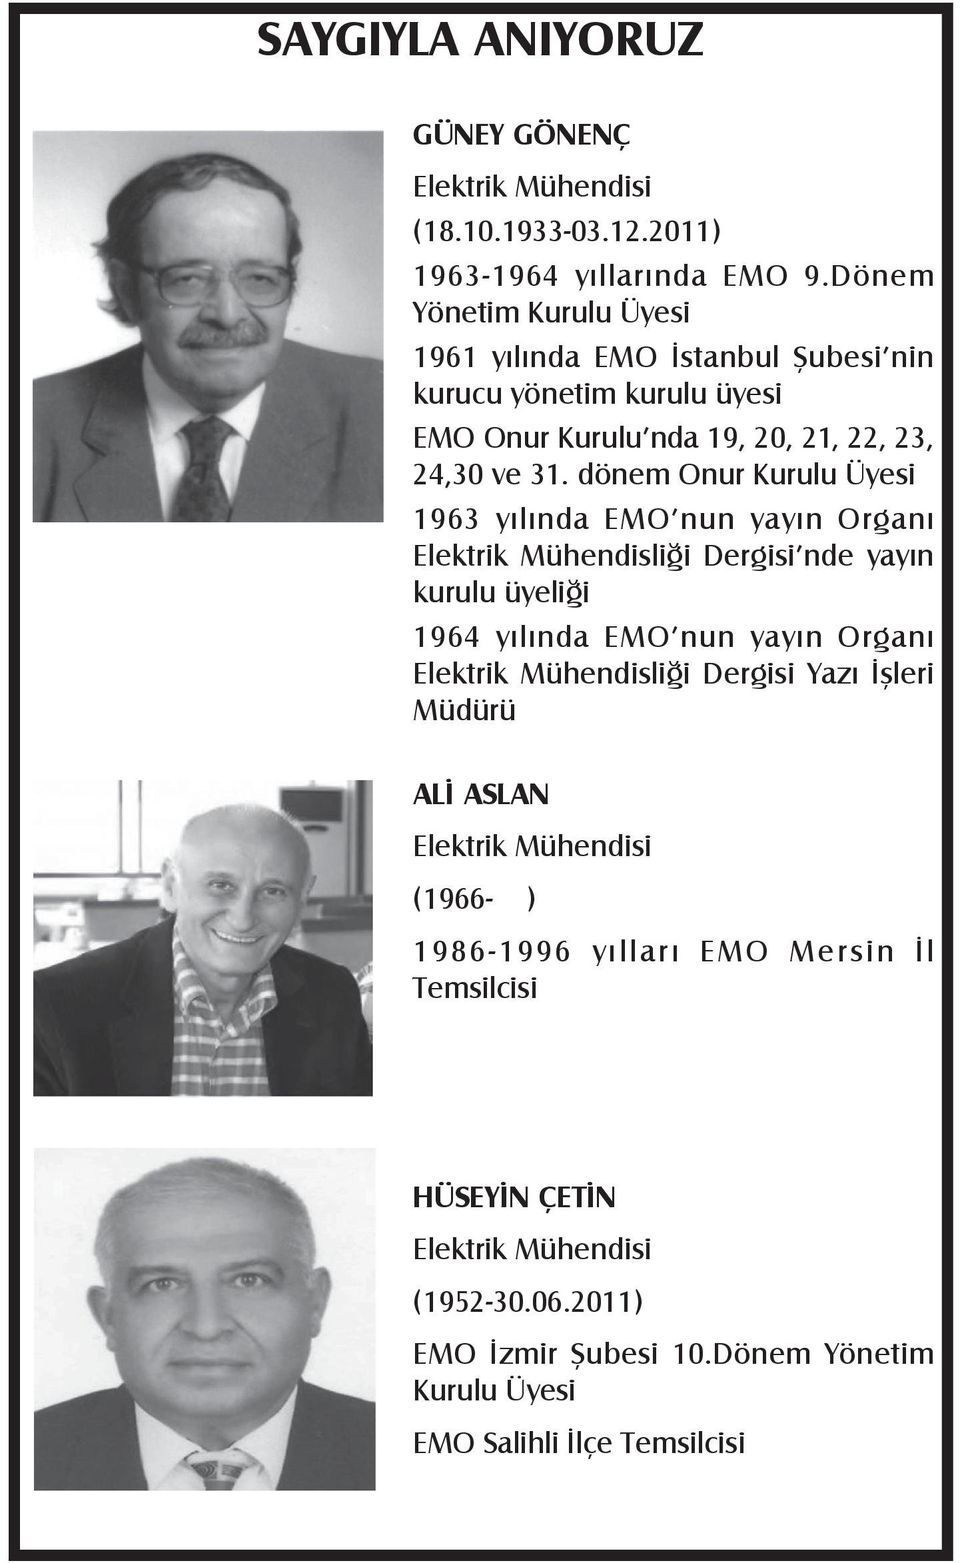 dönem Onur Kurulu Üyesi 1963 yılında EMO nun yayın Organı Elektrik Mühendisliği Dergisi nde yayın kurulu üyeliği 1964 yılında EMO nun yayın